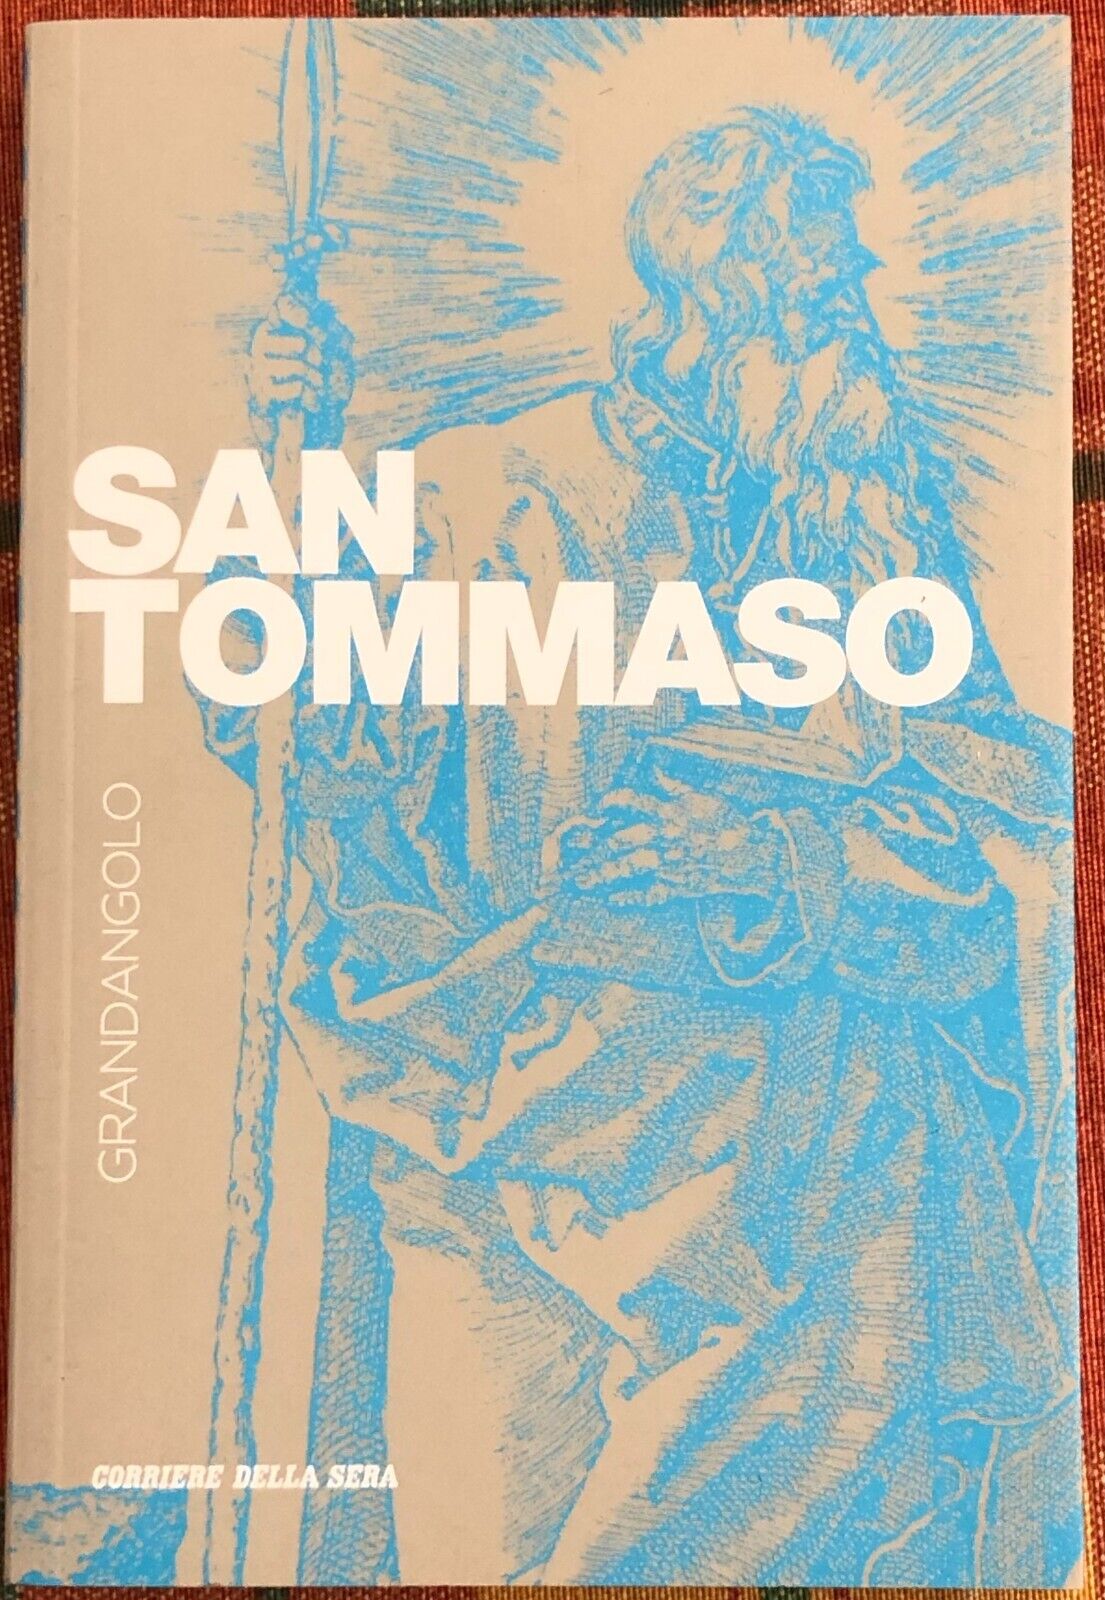 Grandangolo n. 11 - San Tommaso di Carlo Chiurco, 2019, Corriere Della Sera